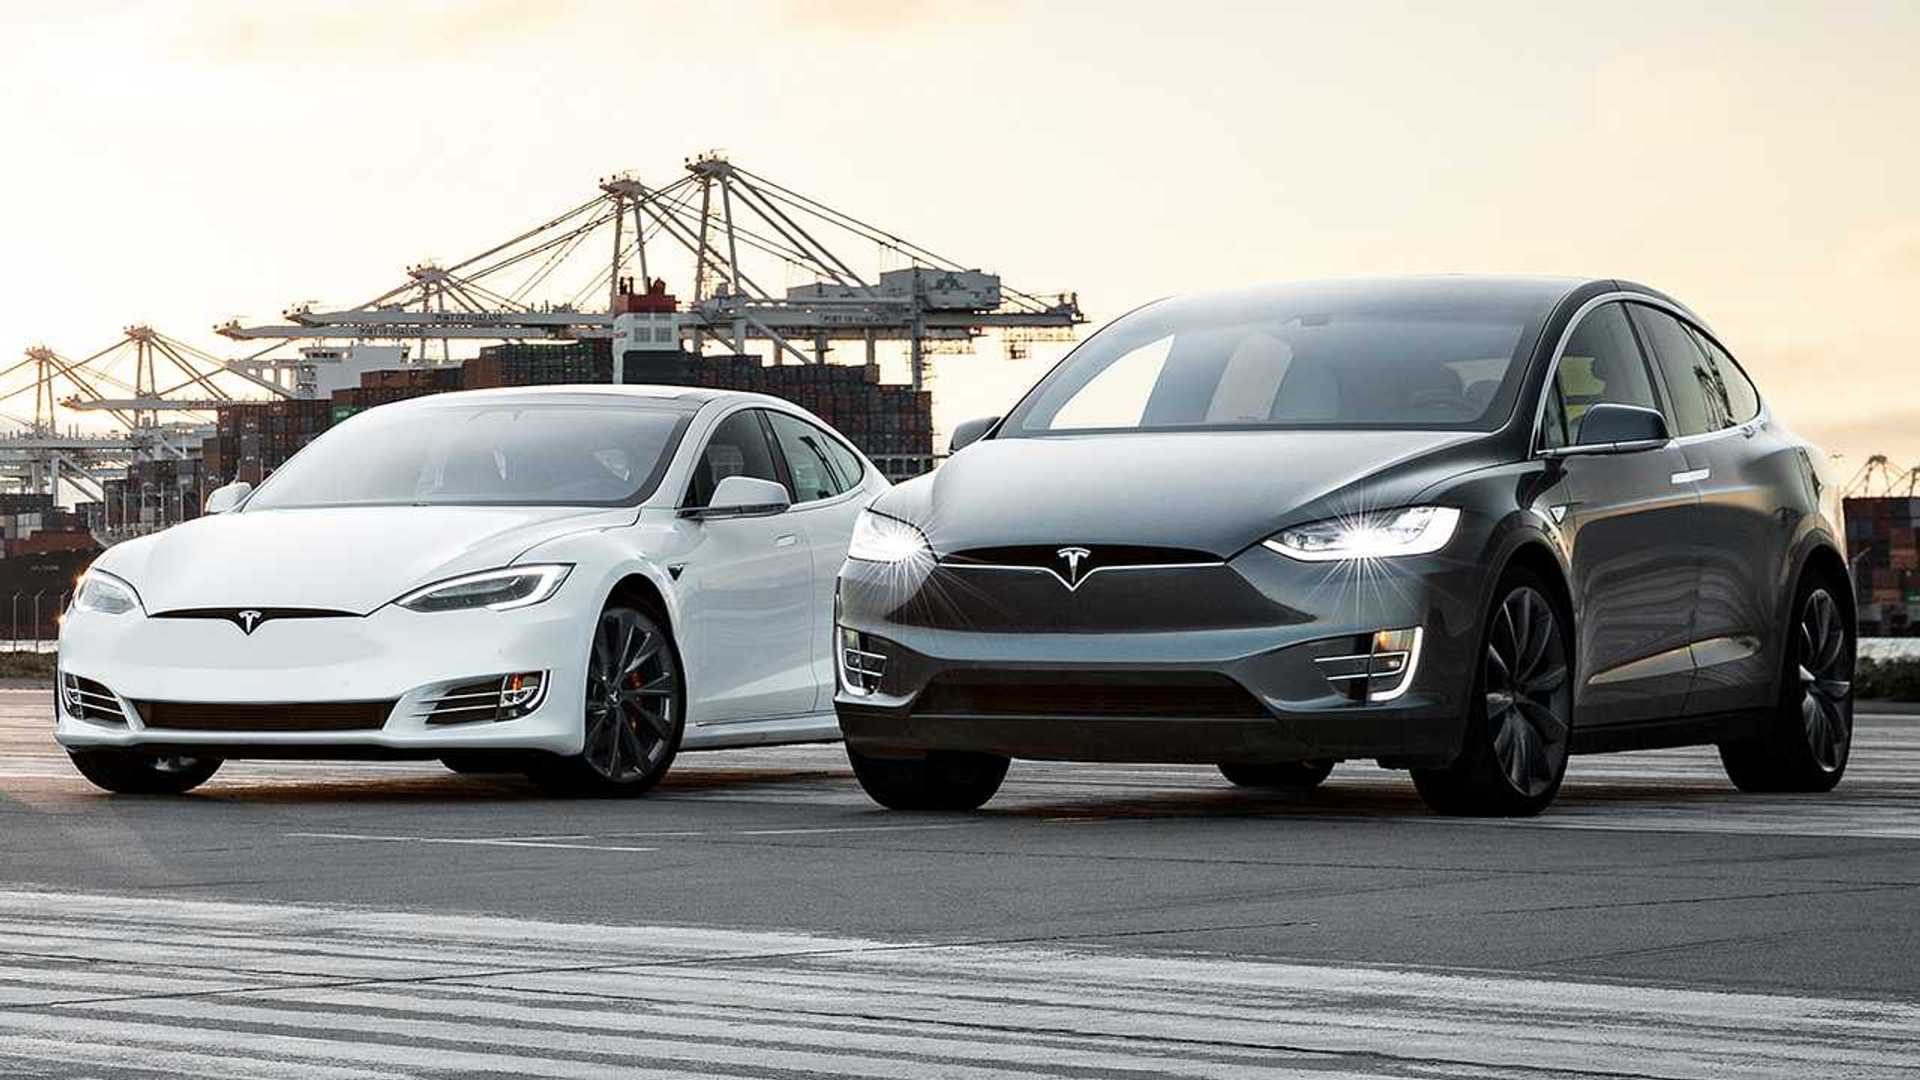 Tesla vuelve a rebajar los precios de sus coches eléctricos: el Model X baja 10.000 dólares y el Model S, 5.000 dólares